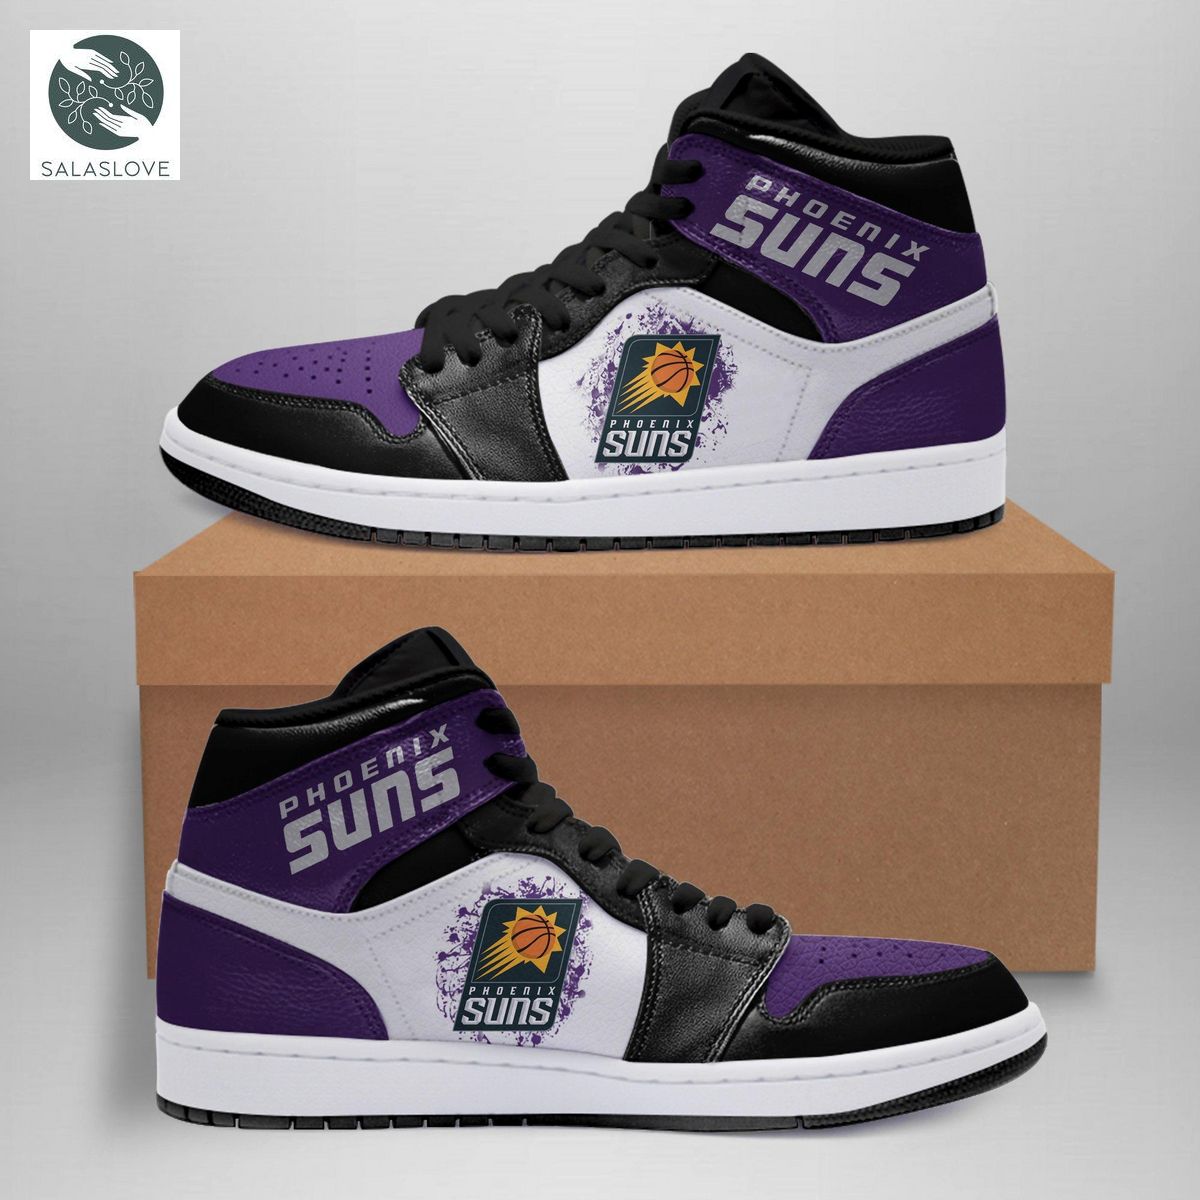 Phoenix Suns Nba Sneakers Air Jordan 11